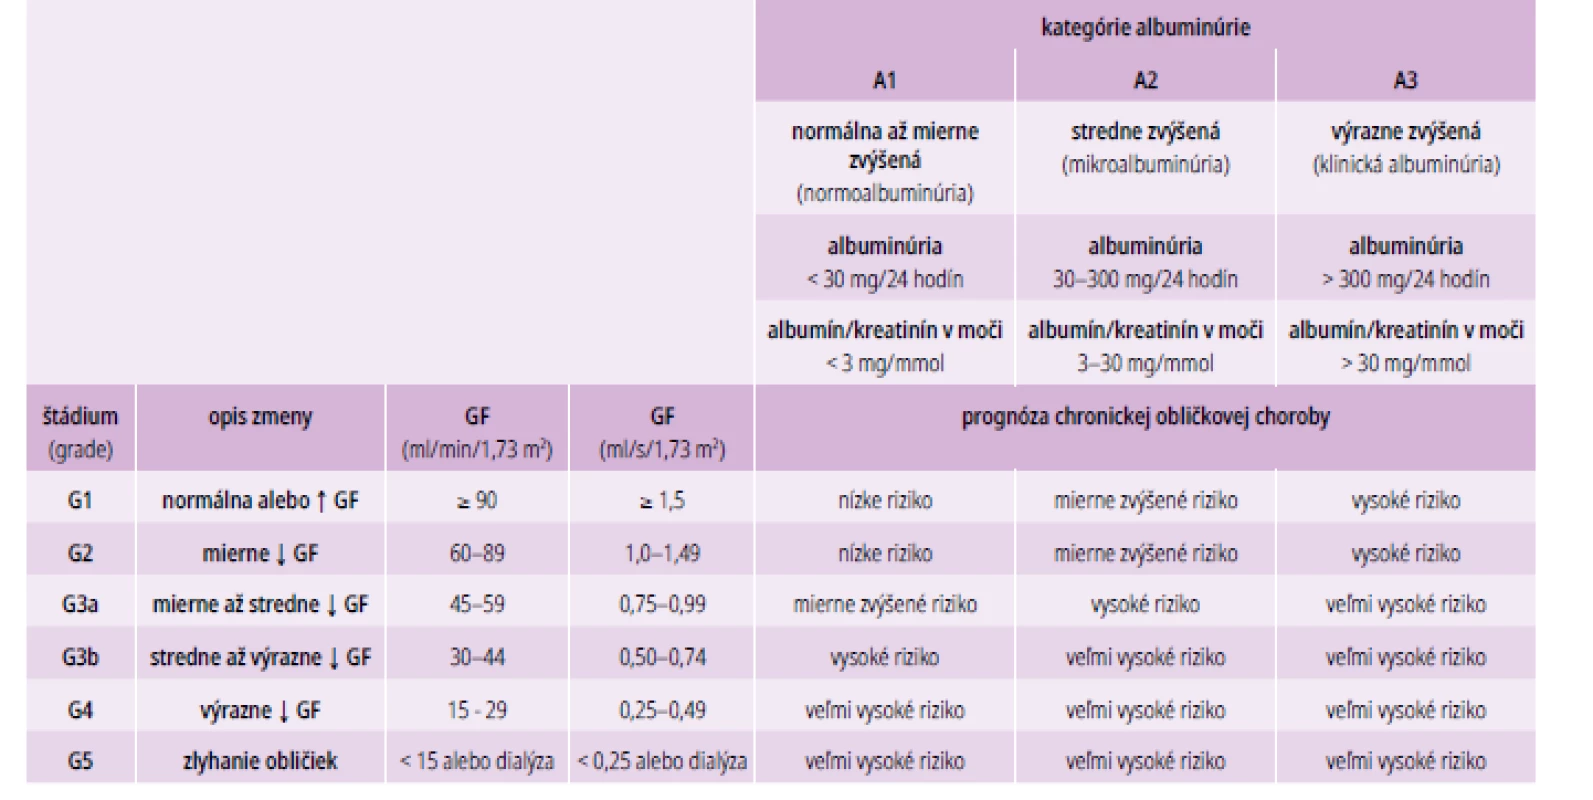 Prognóza chronických obličkových chorôb podľa štádia GF a kategórie albuminúrie.
Upravené podľa [13]